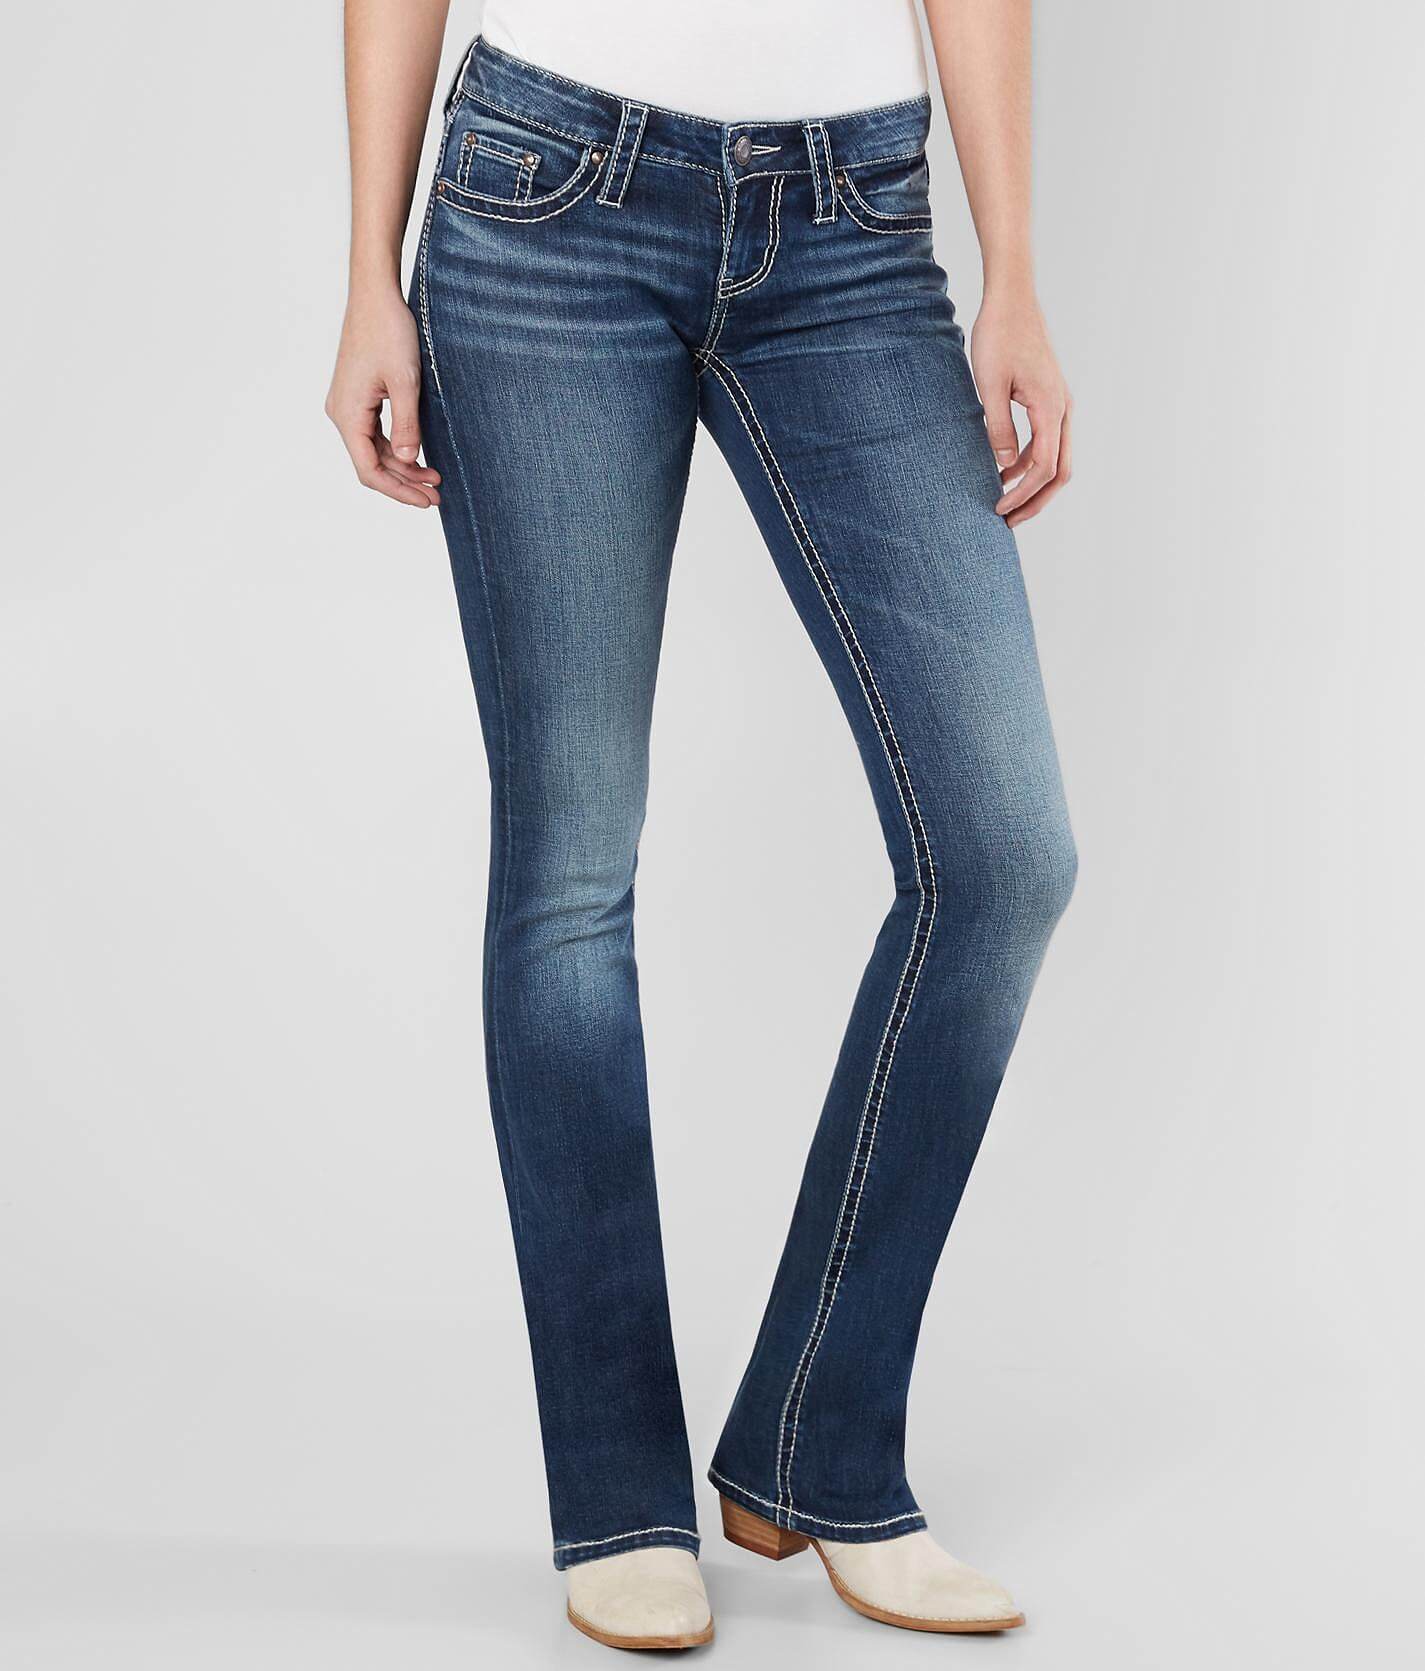 daytrip jeans size chart